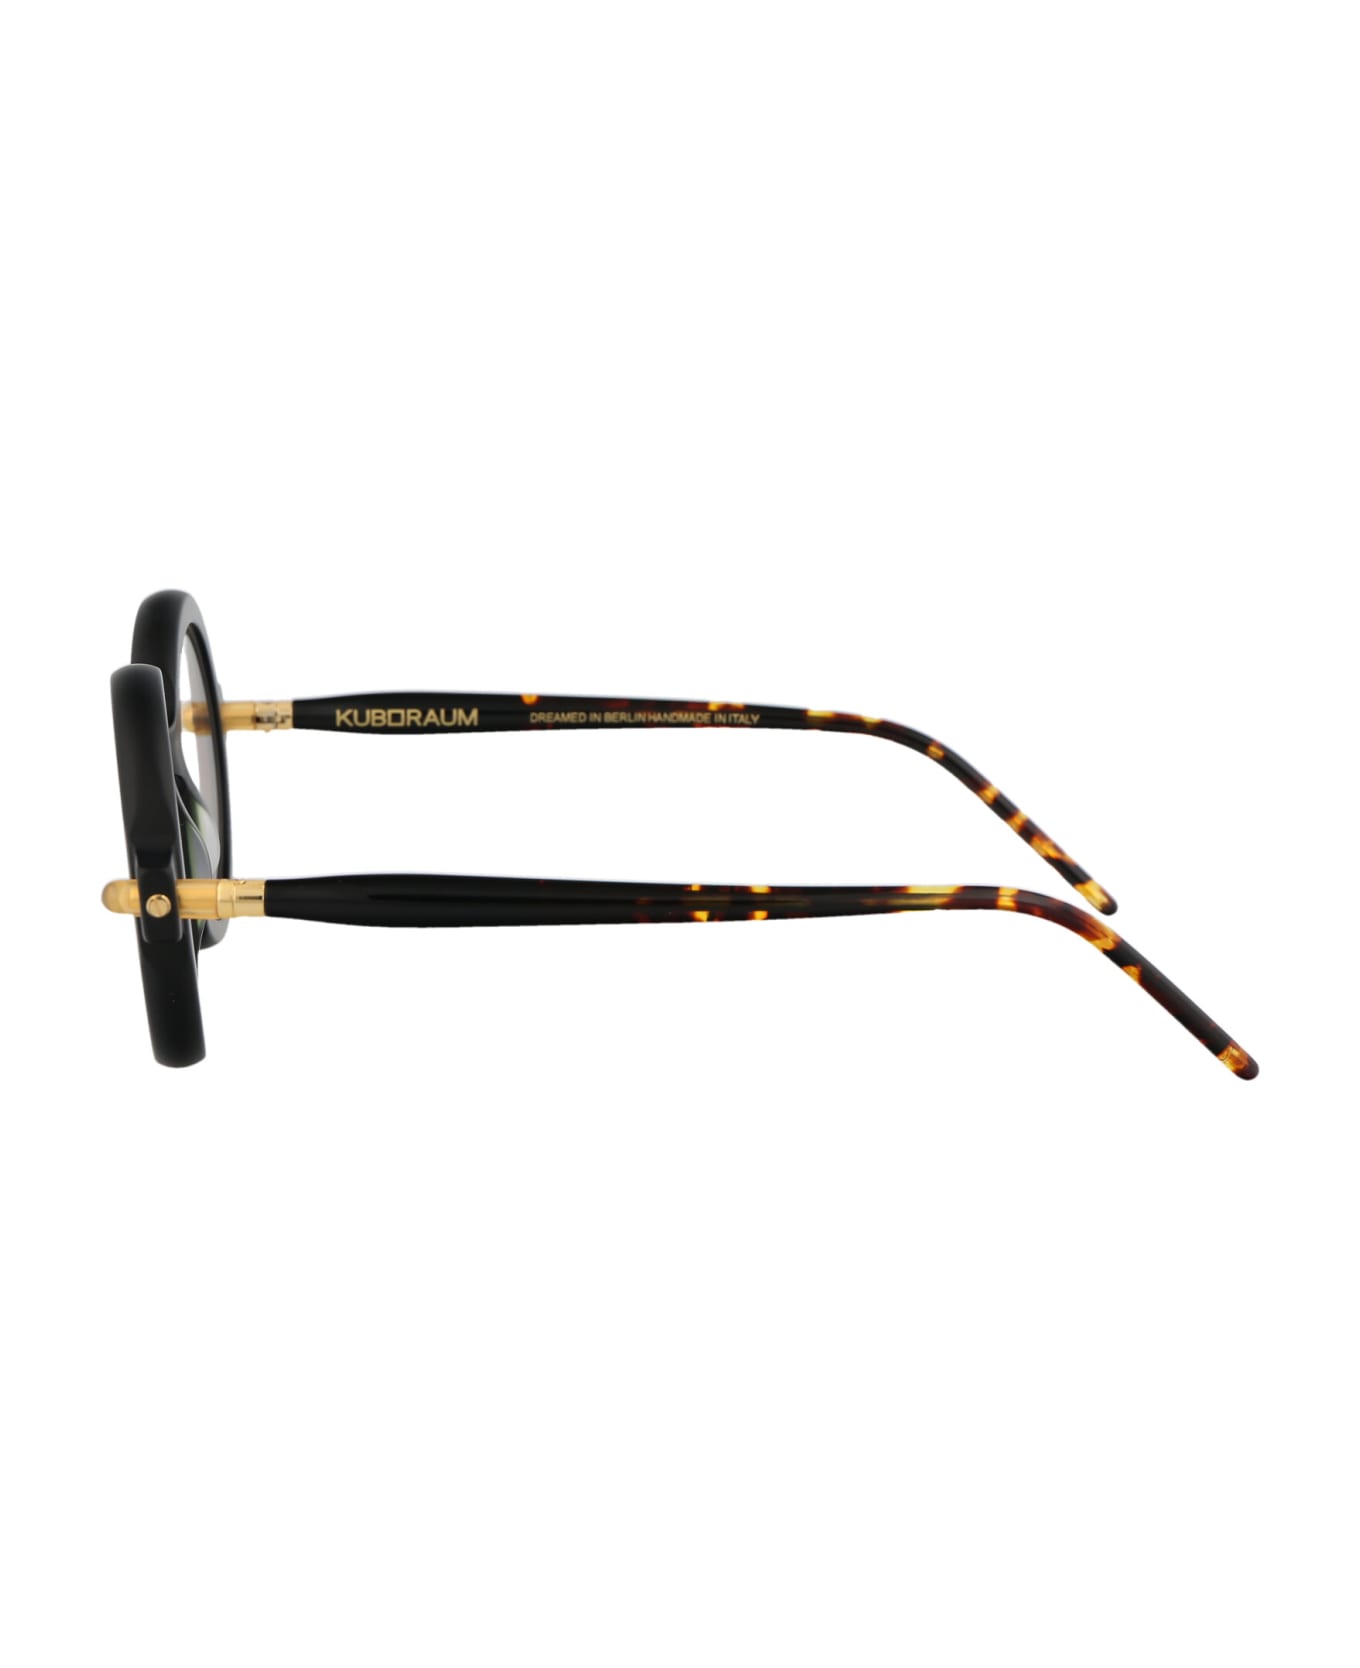 Kuboraum Maske P1 Glasses - BM OT アイウェア